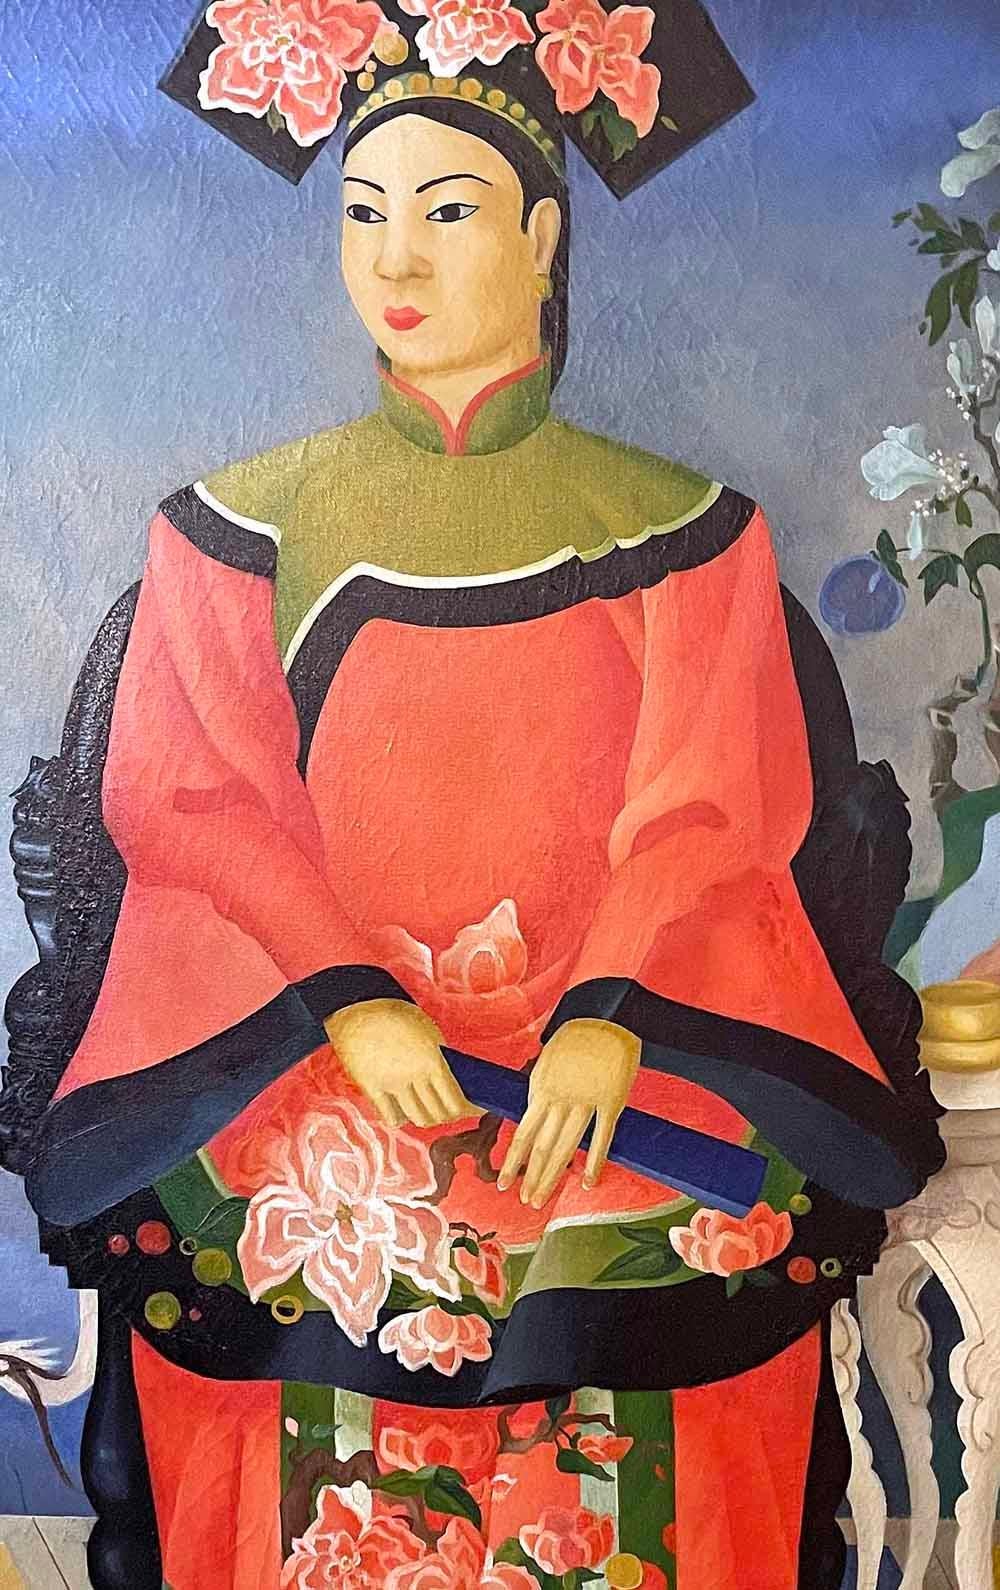 Dieses brillante Ölgemälde aus dem Jahr 1936 ist in kräftigen Rosa-, Himmelblau- und Elfenbeintönen gehalten und zeigt eine chinesische Adelige in einem bestickten Kleid und einer kunstvollen Kopfbedeckung, flankiert von Symbolen für Langlebigkeit,